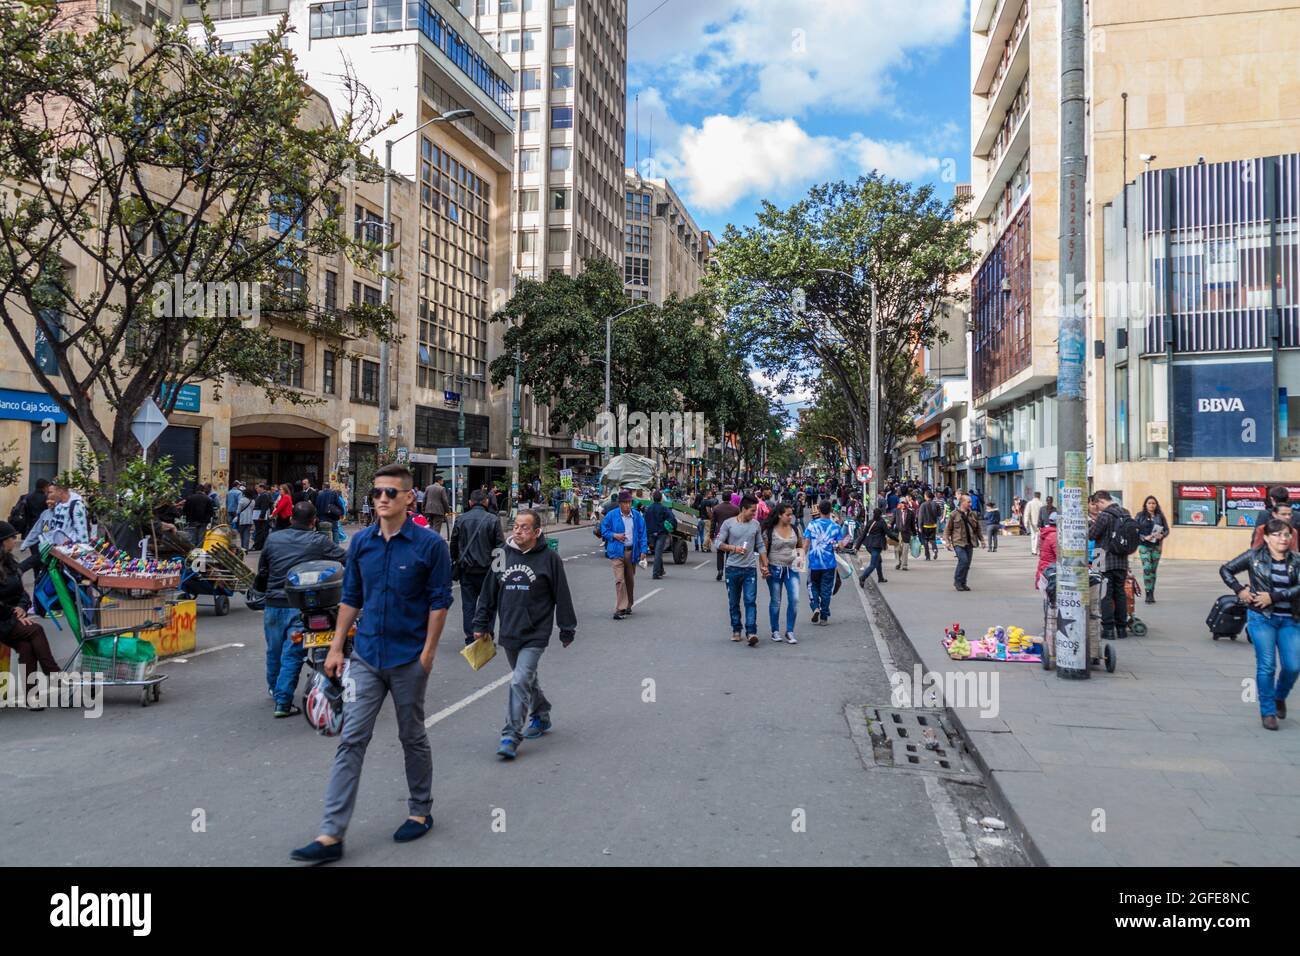 BOGOTÁ, COLOMBIA - 24 DE SEPTIEMBRE de 2015: La gente camina por la calle  Carrera 7 en Bogotá, capital de Colombia Fotografía de stock - Alamy